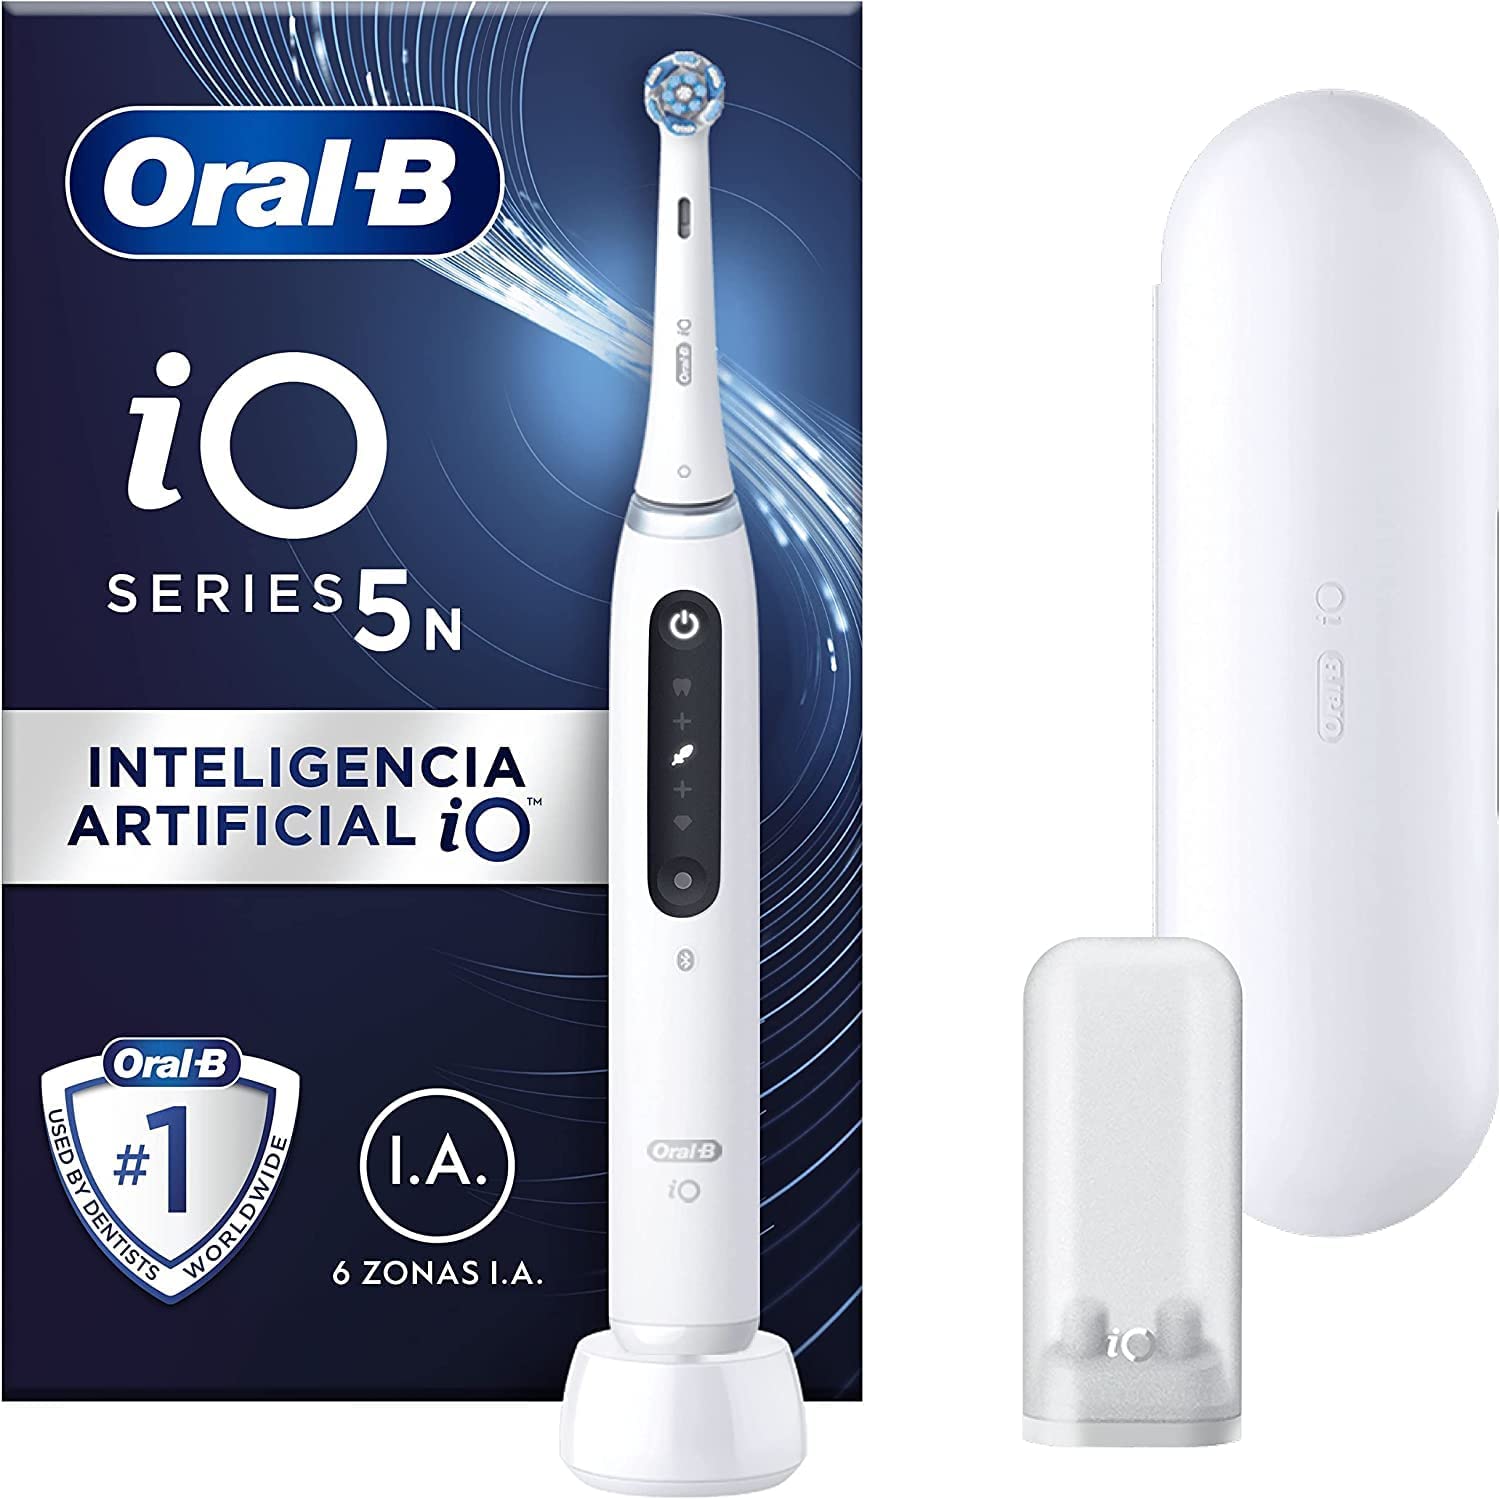 Oral-B IO 5 vs Oral-B IO 4 vs Oral-B IO 6